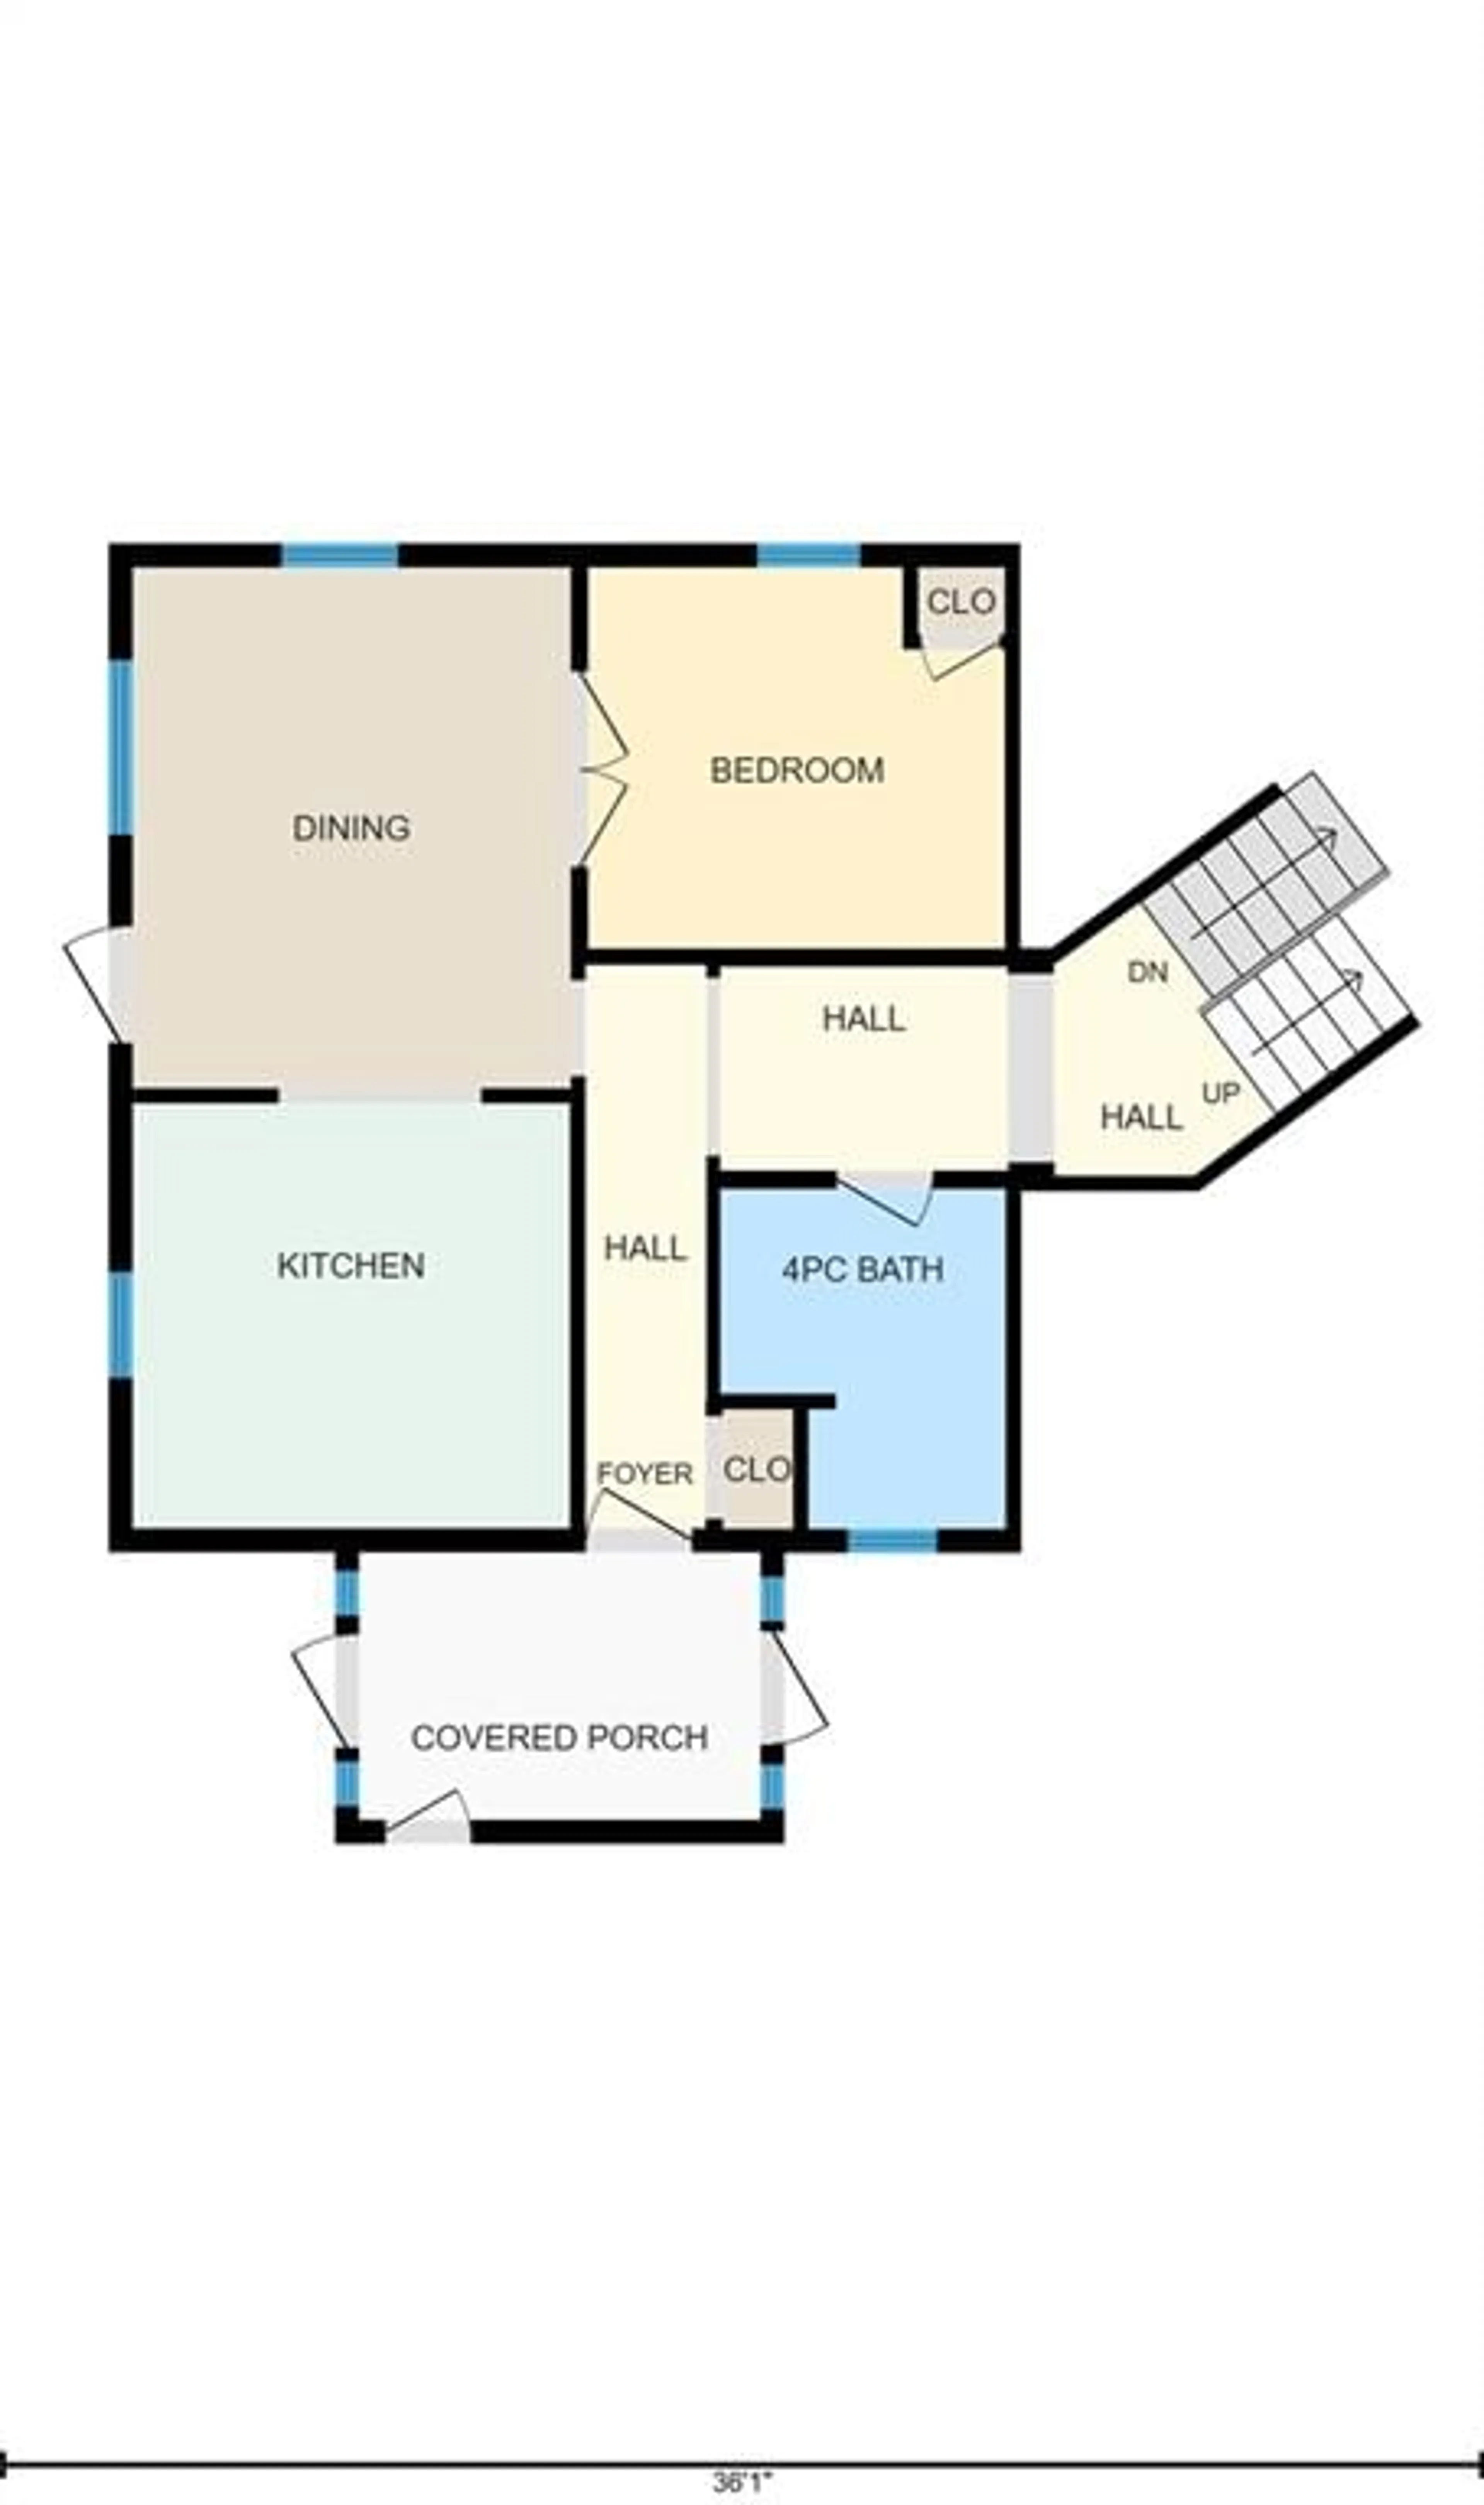 Floor plan for 112 DRUMMOND St, Merrickville Ontario K0G 1N0